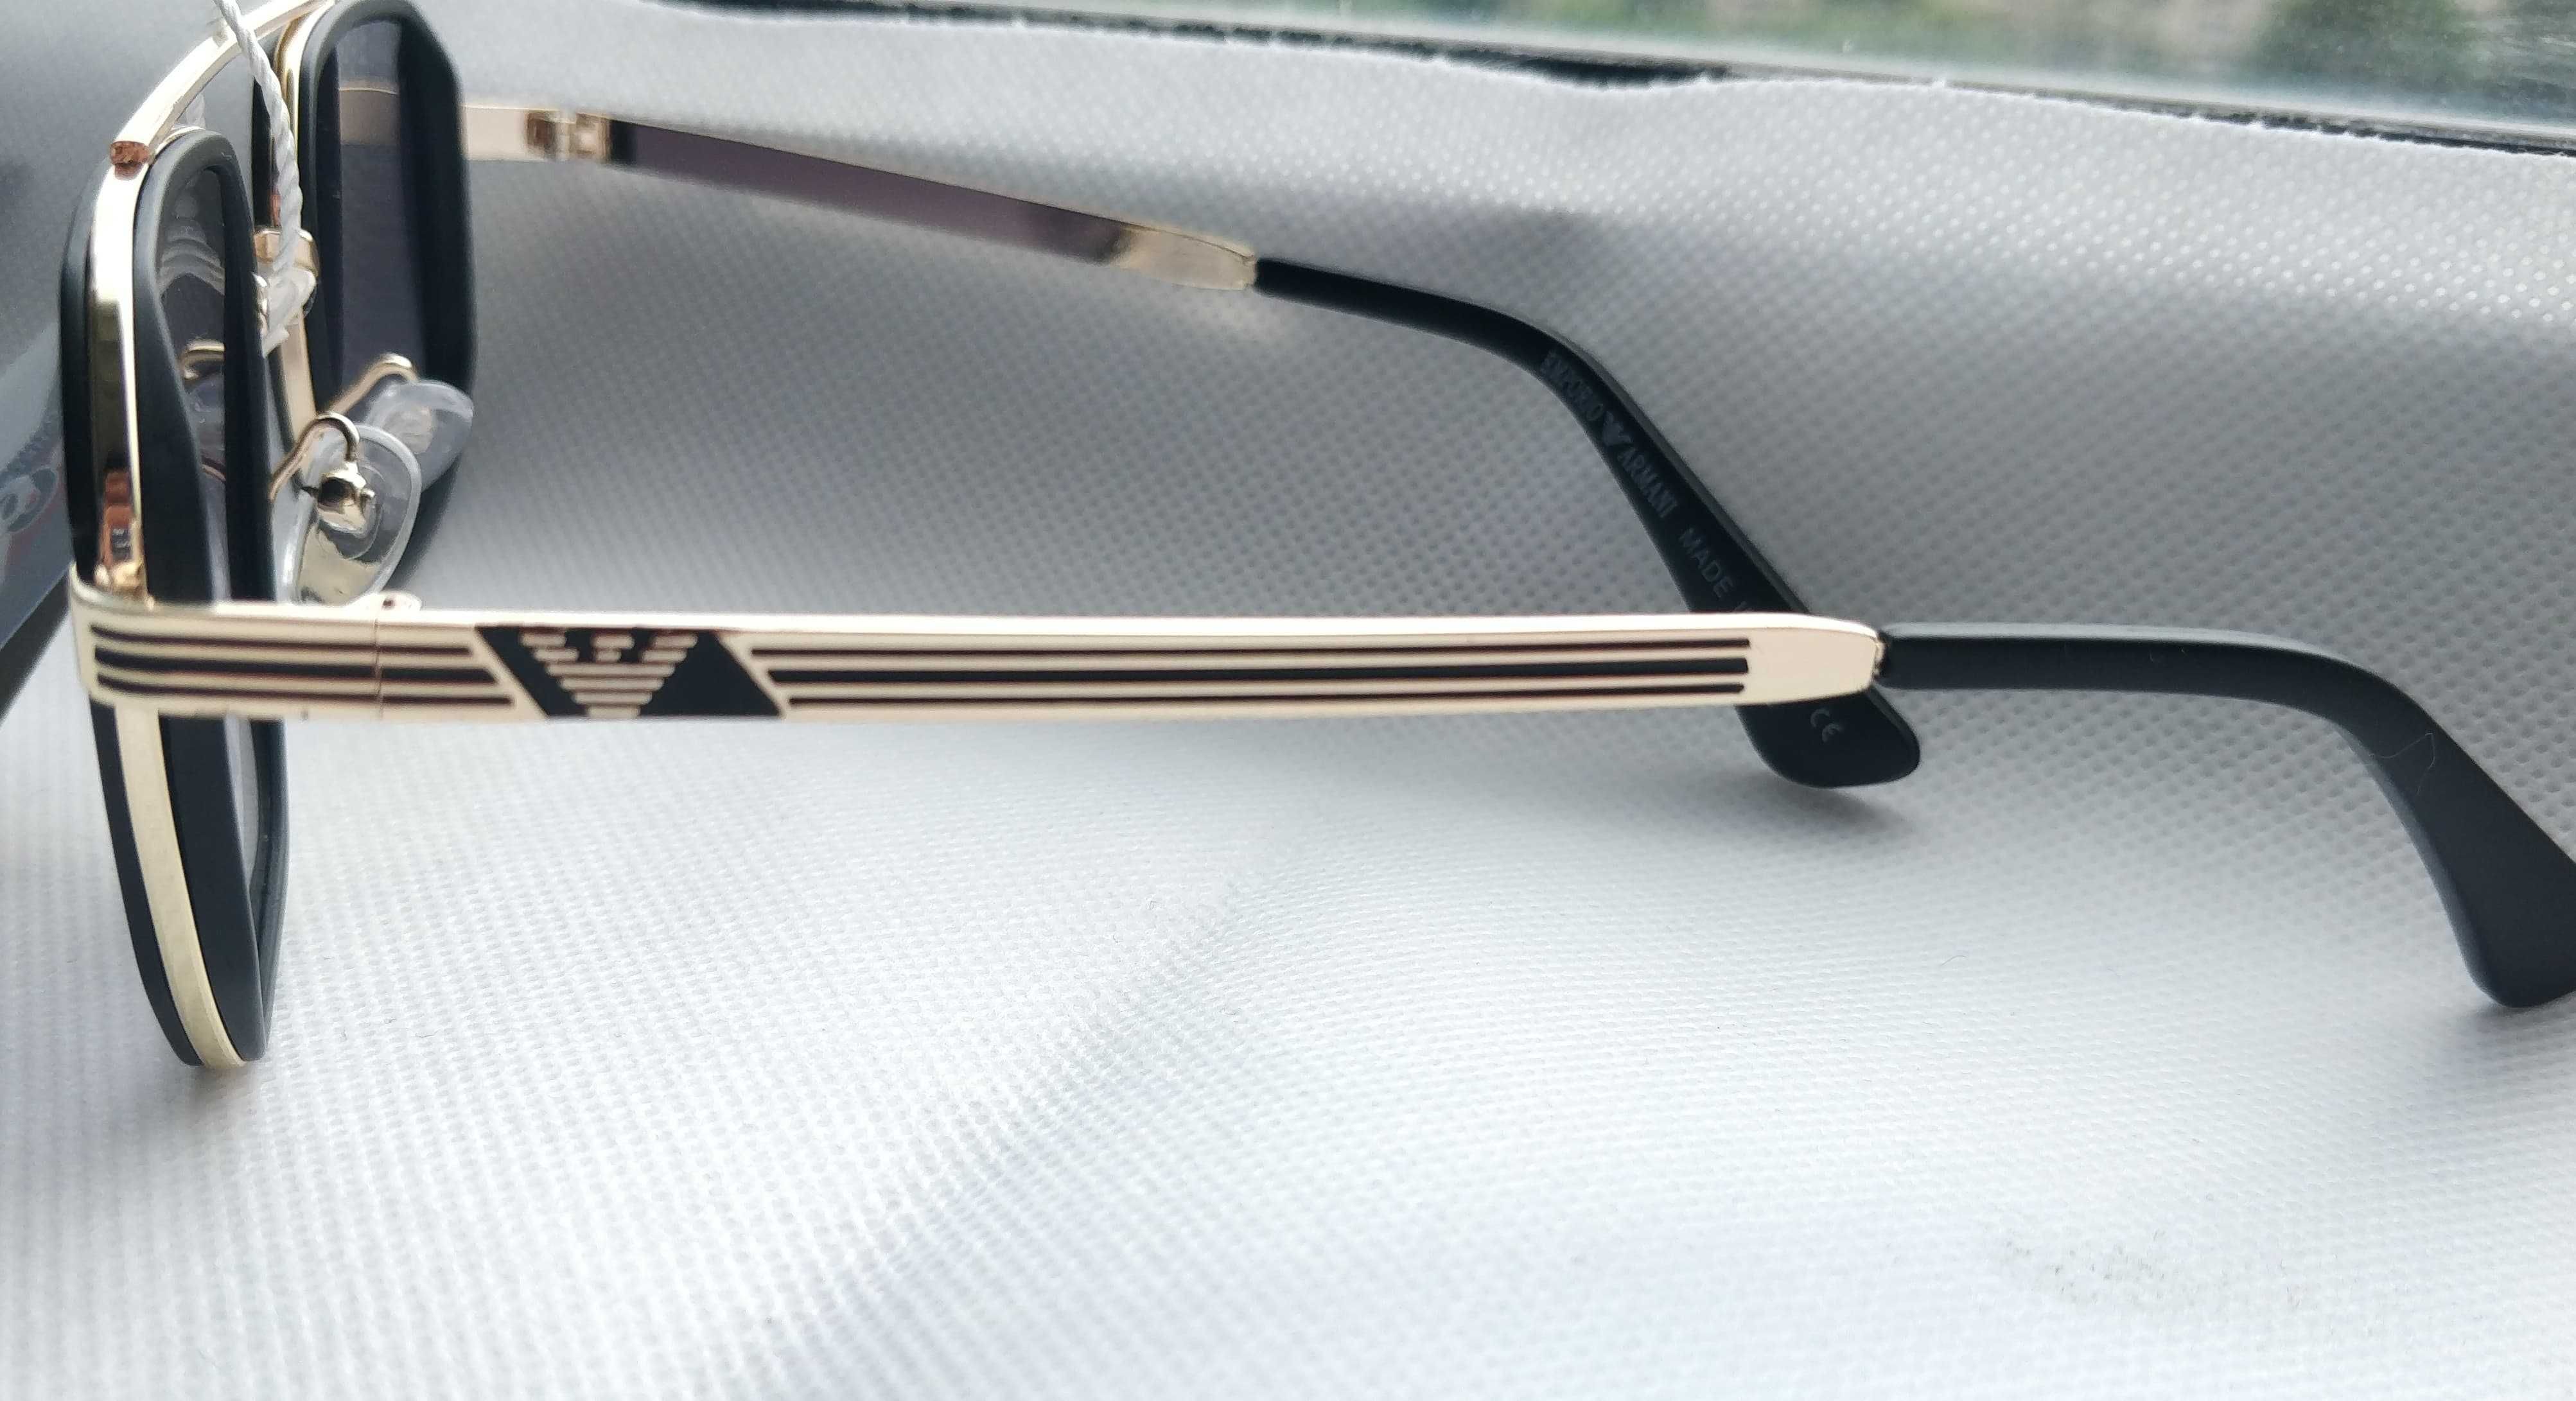 Ochelari de soare Armani model 5